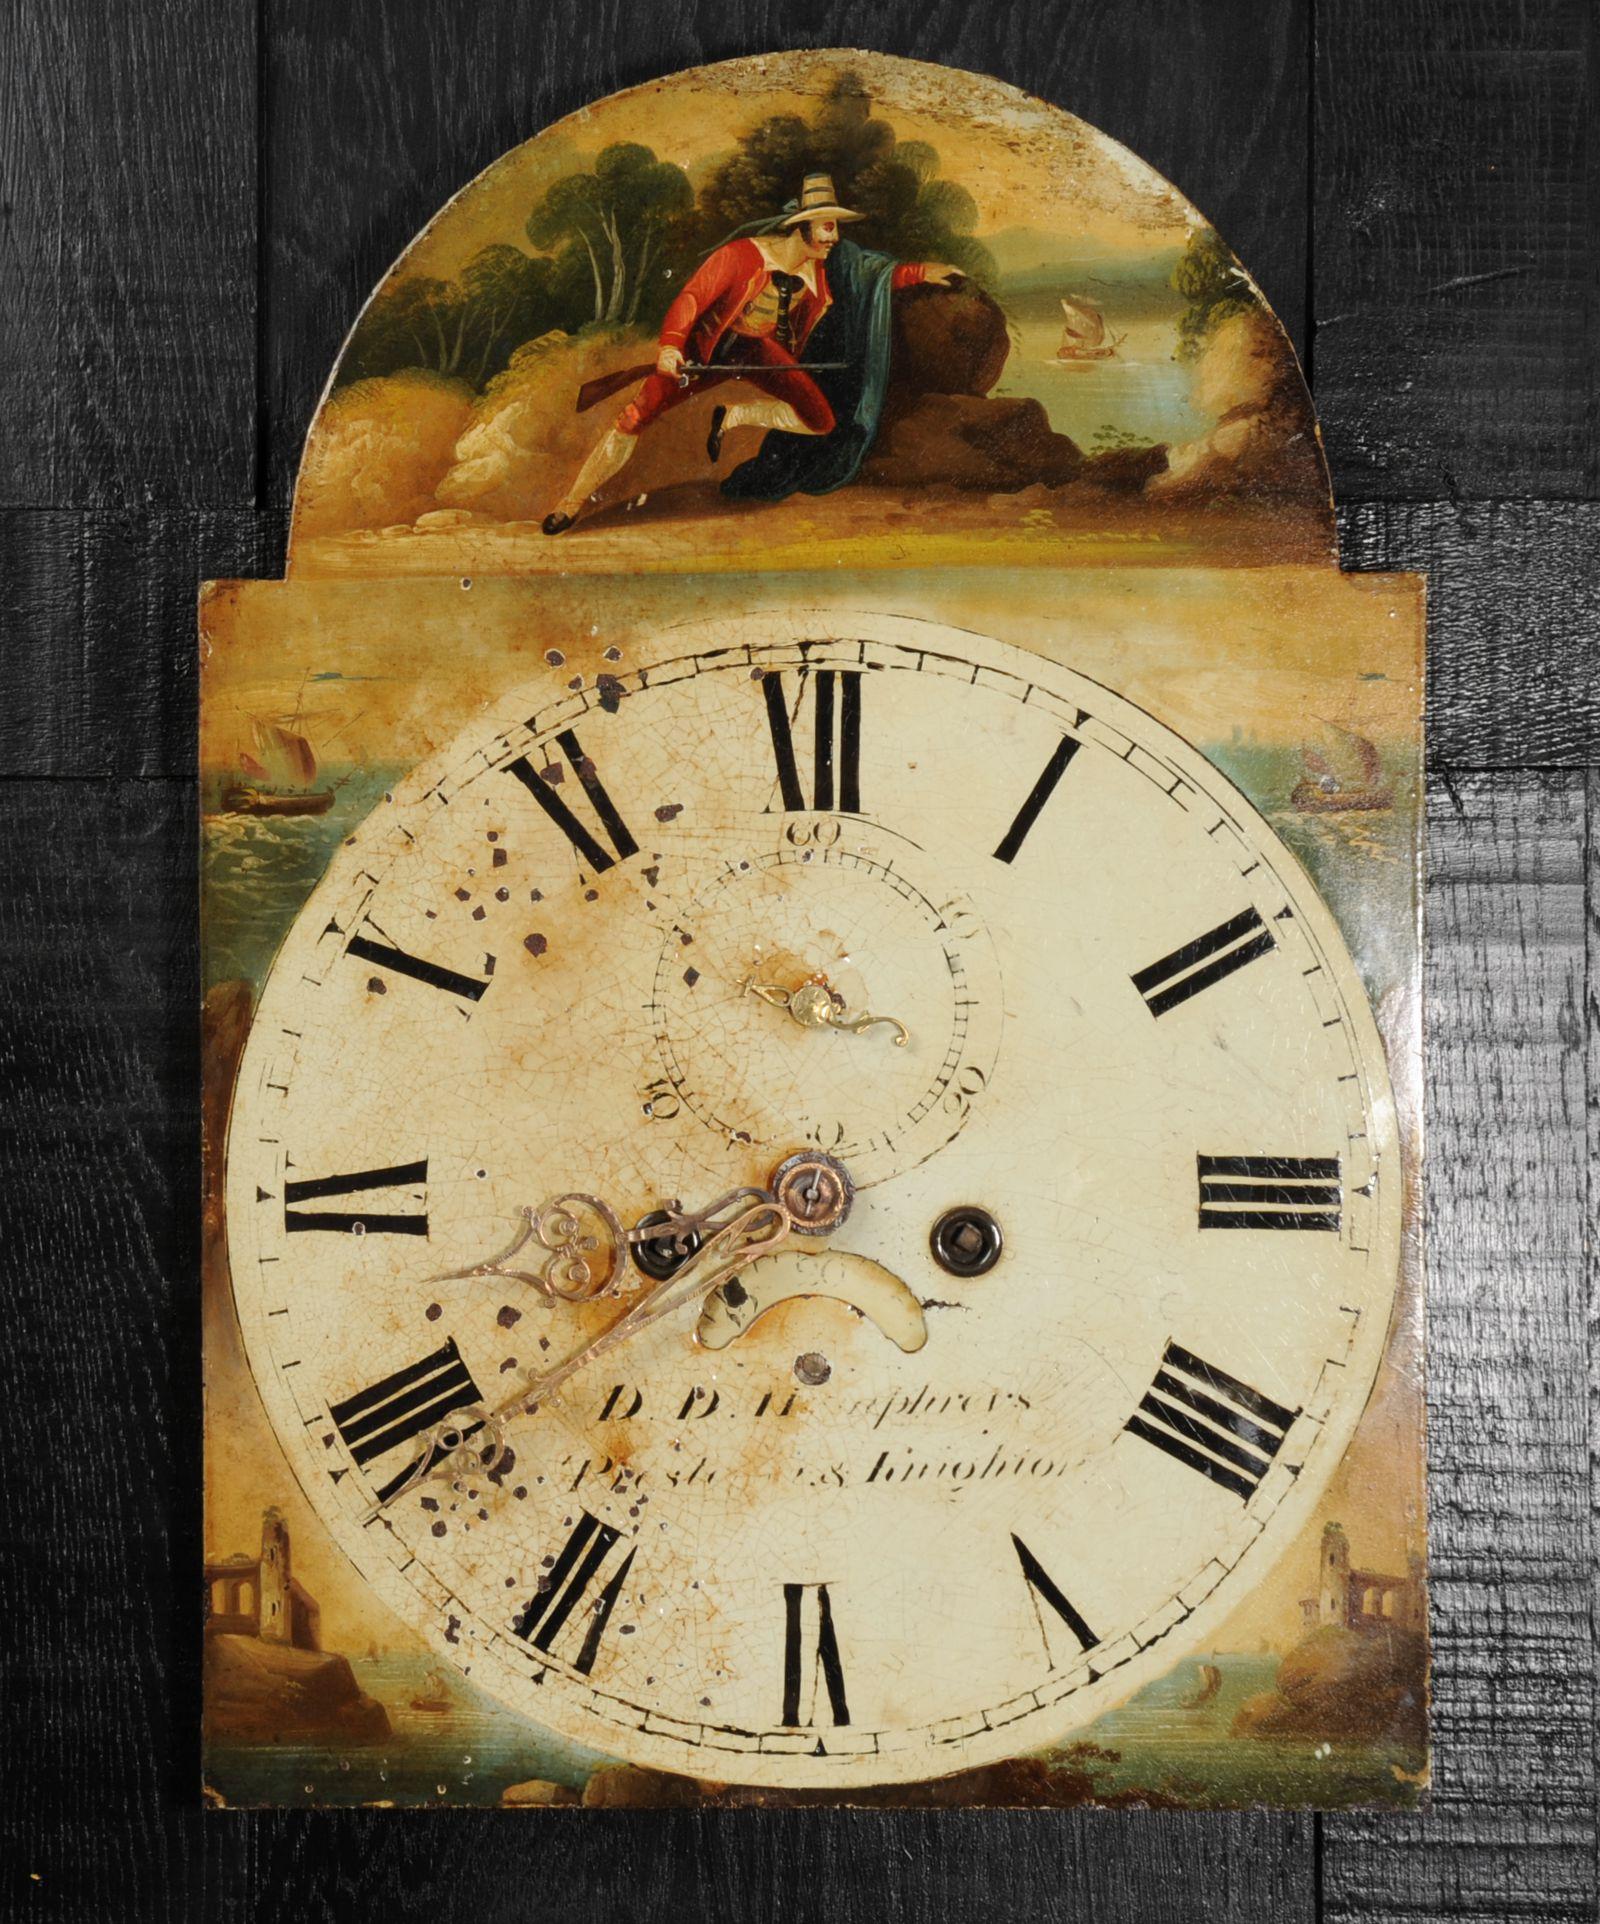 Ein hübsches antikes Eisenuhrenzifferblatt aus dem Jahr 1850, auf dem der legendäre Schmuggler und Räuber Will Watch abgebildet ist. Schön gemalt in den leuchtenden Farben des Theaters, wurde er in viktorianischen Melodramen und auch in einer